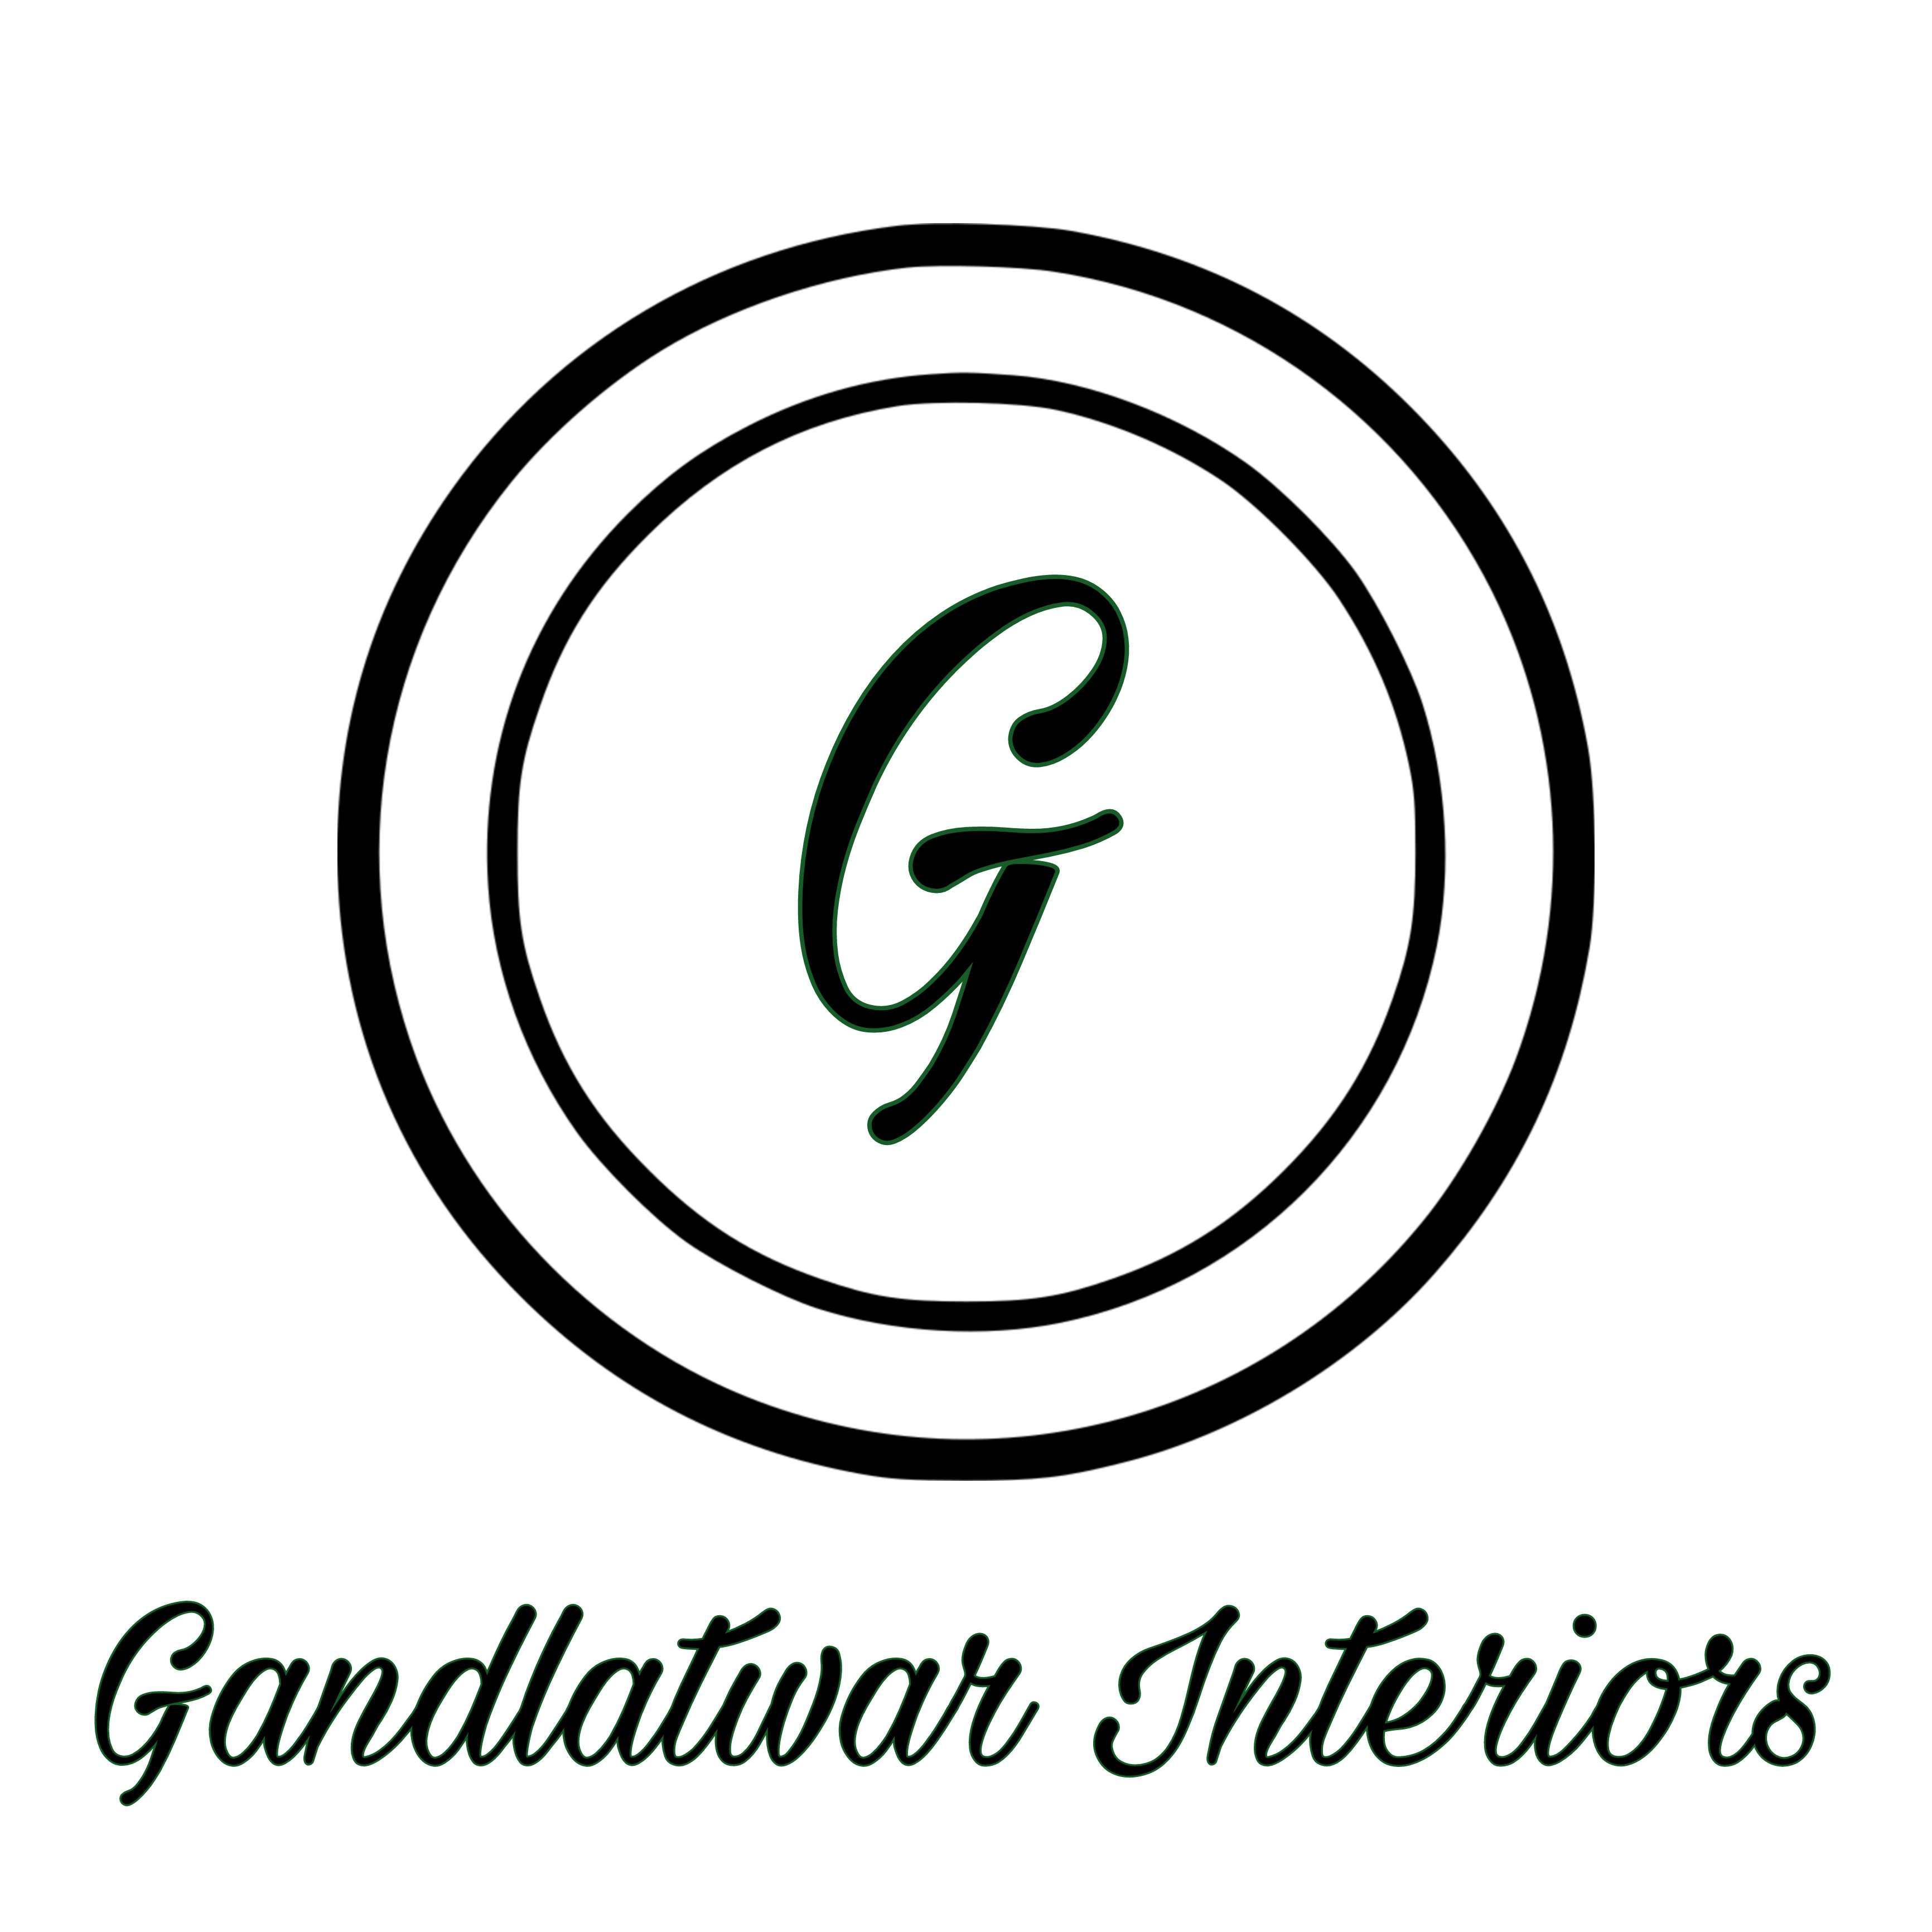 Gandlatwar Interiors logo